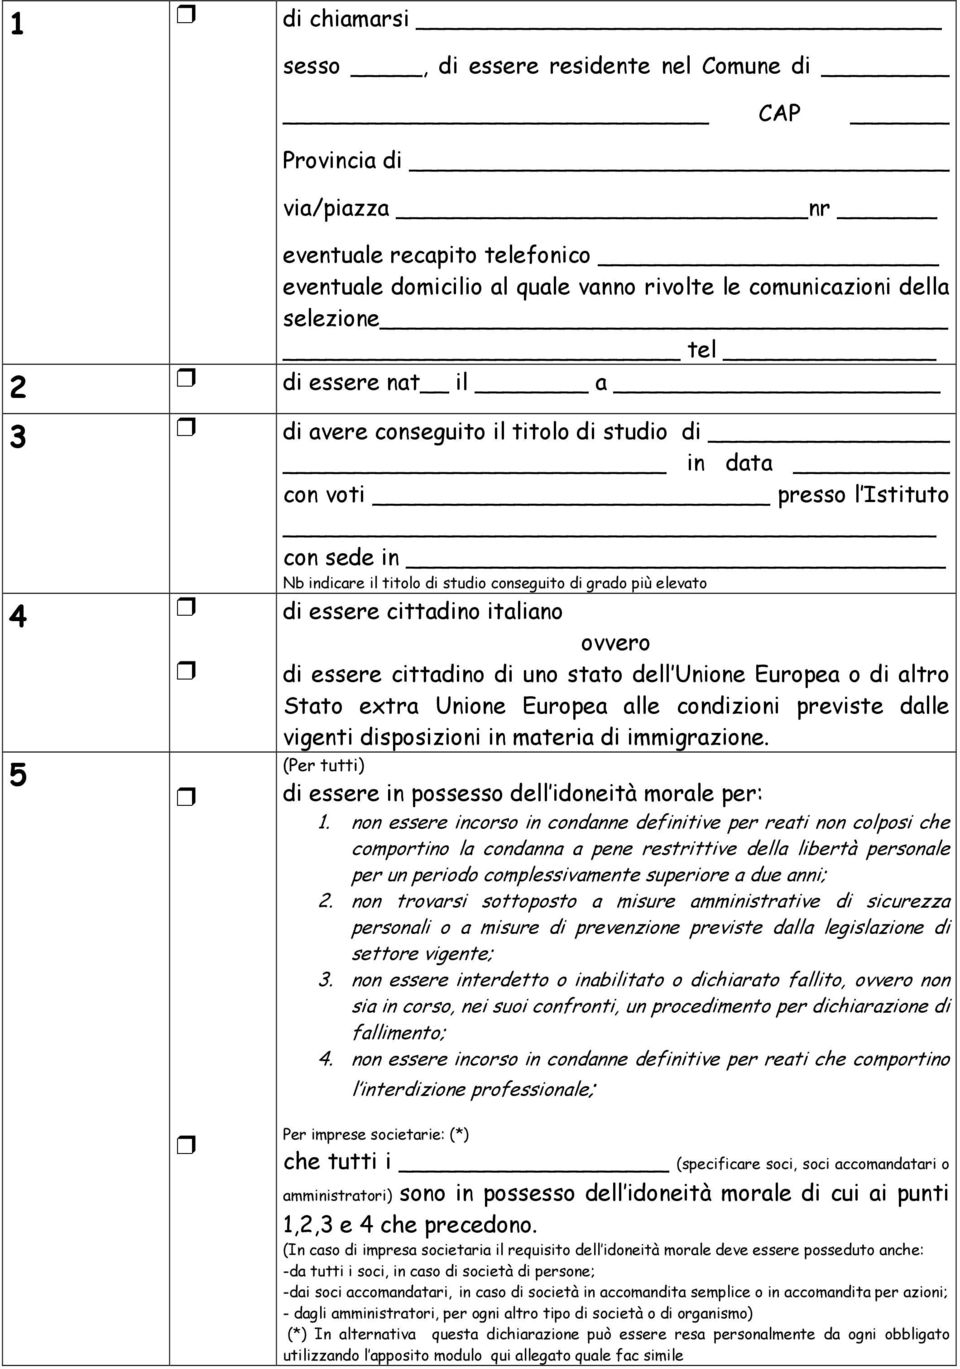 italiano 5 ovvero di essere cittadino di uno stato dell Unione Europea o di altro Stato extra Unione Europea alle condizioni previste dalle vigenti disposizioni in materia di immigrazione.